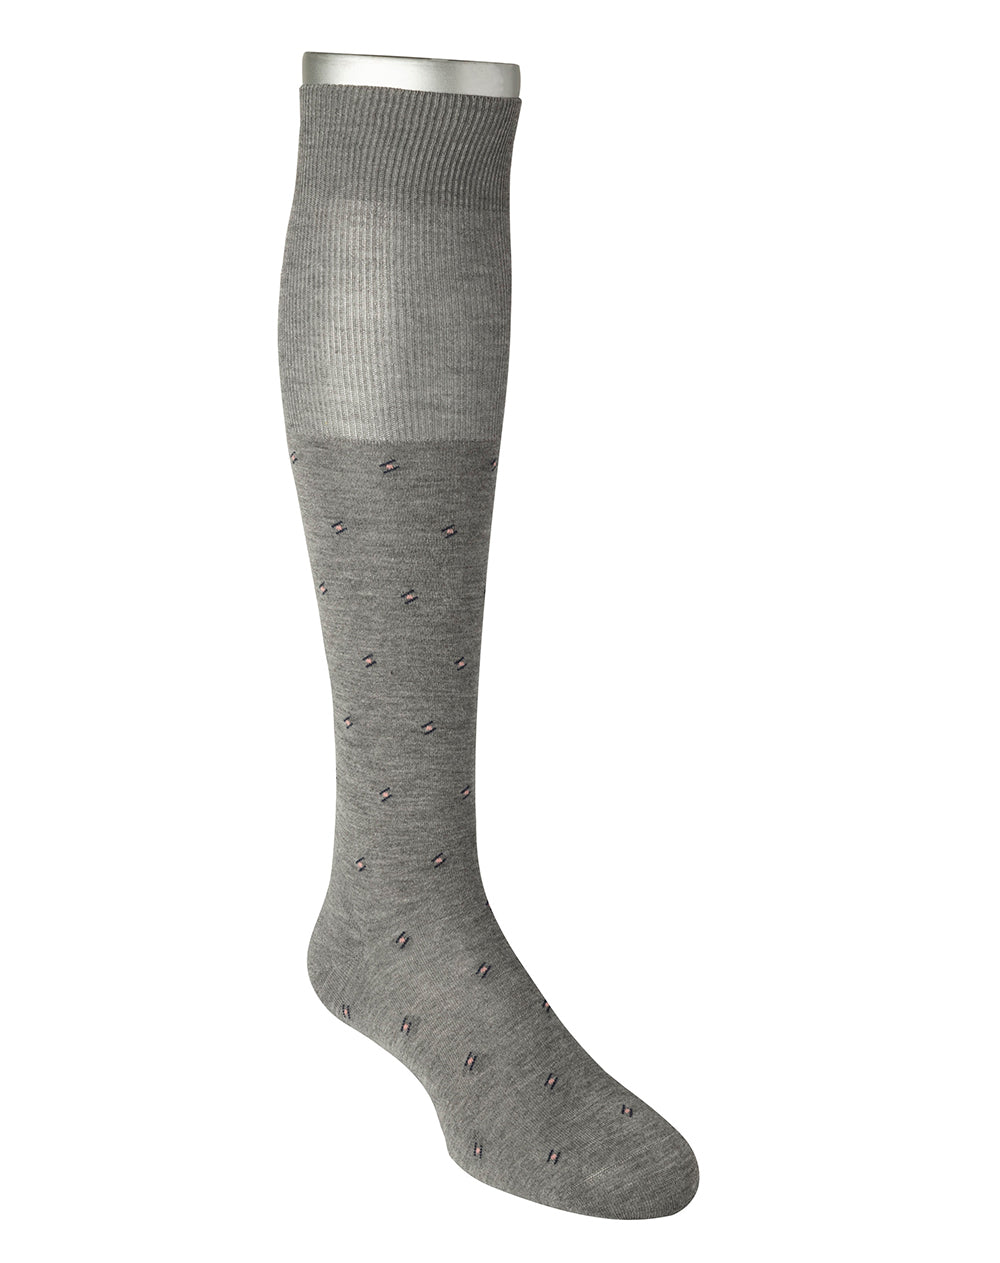 Medias largas rodilla gris dibujo